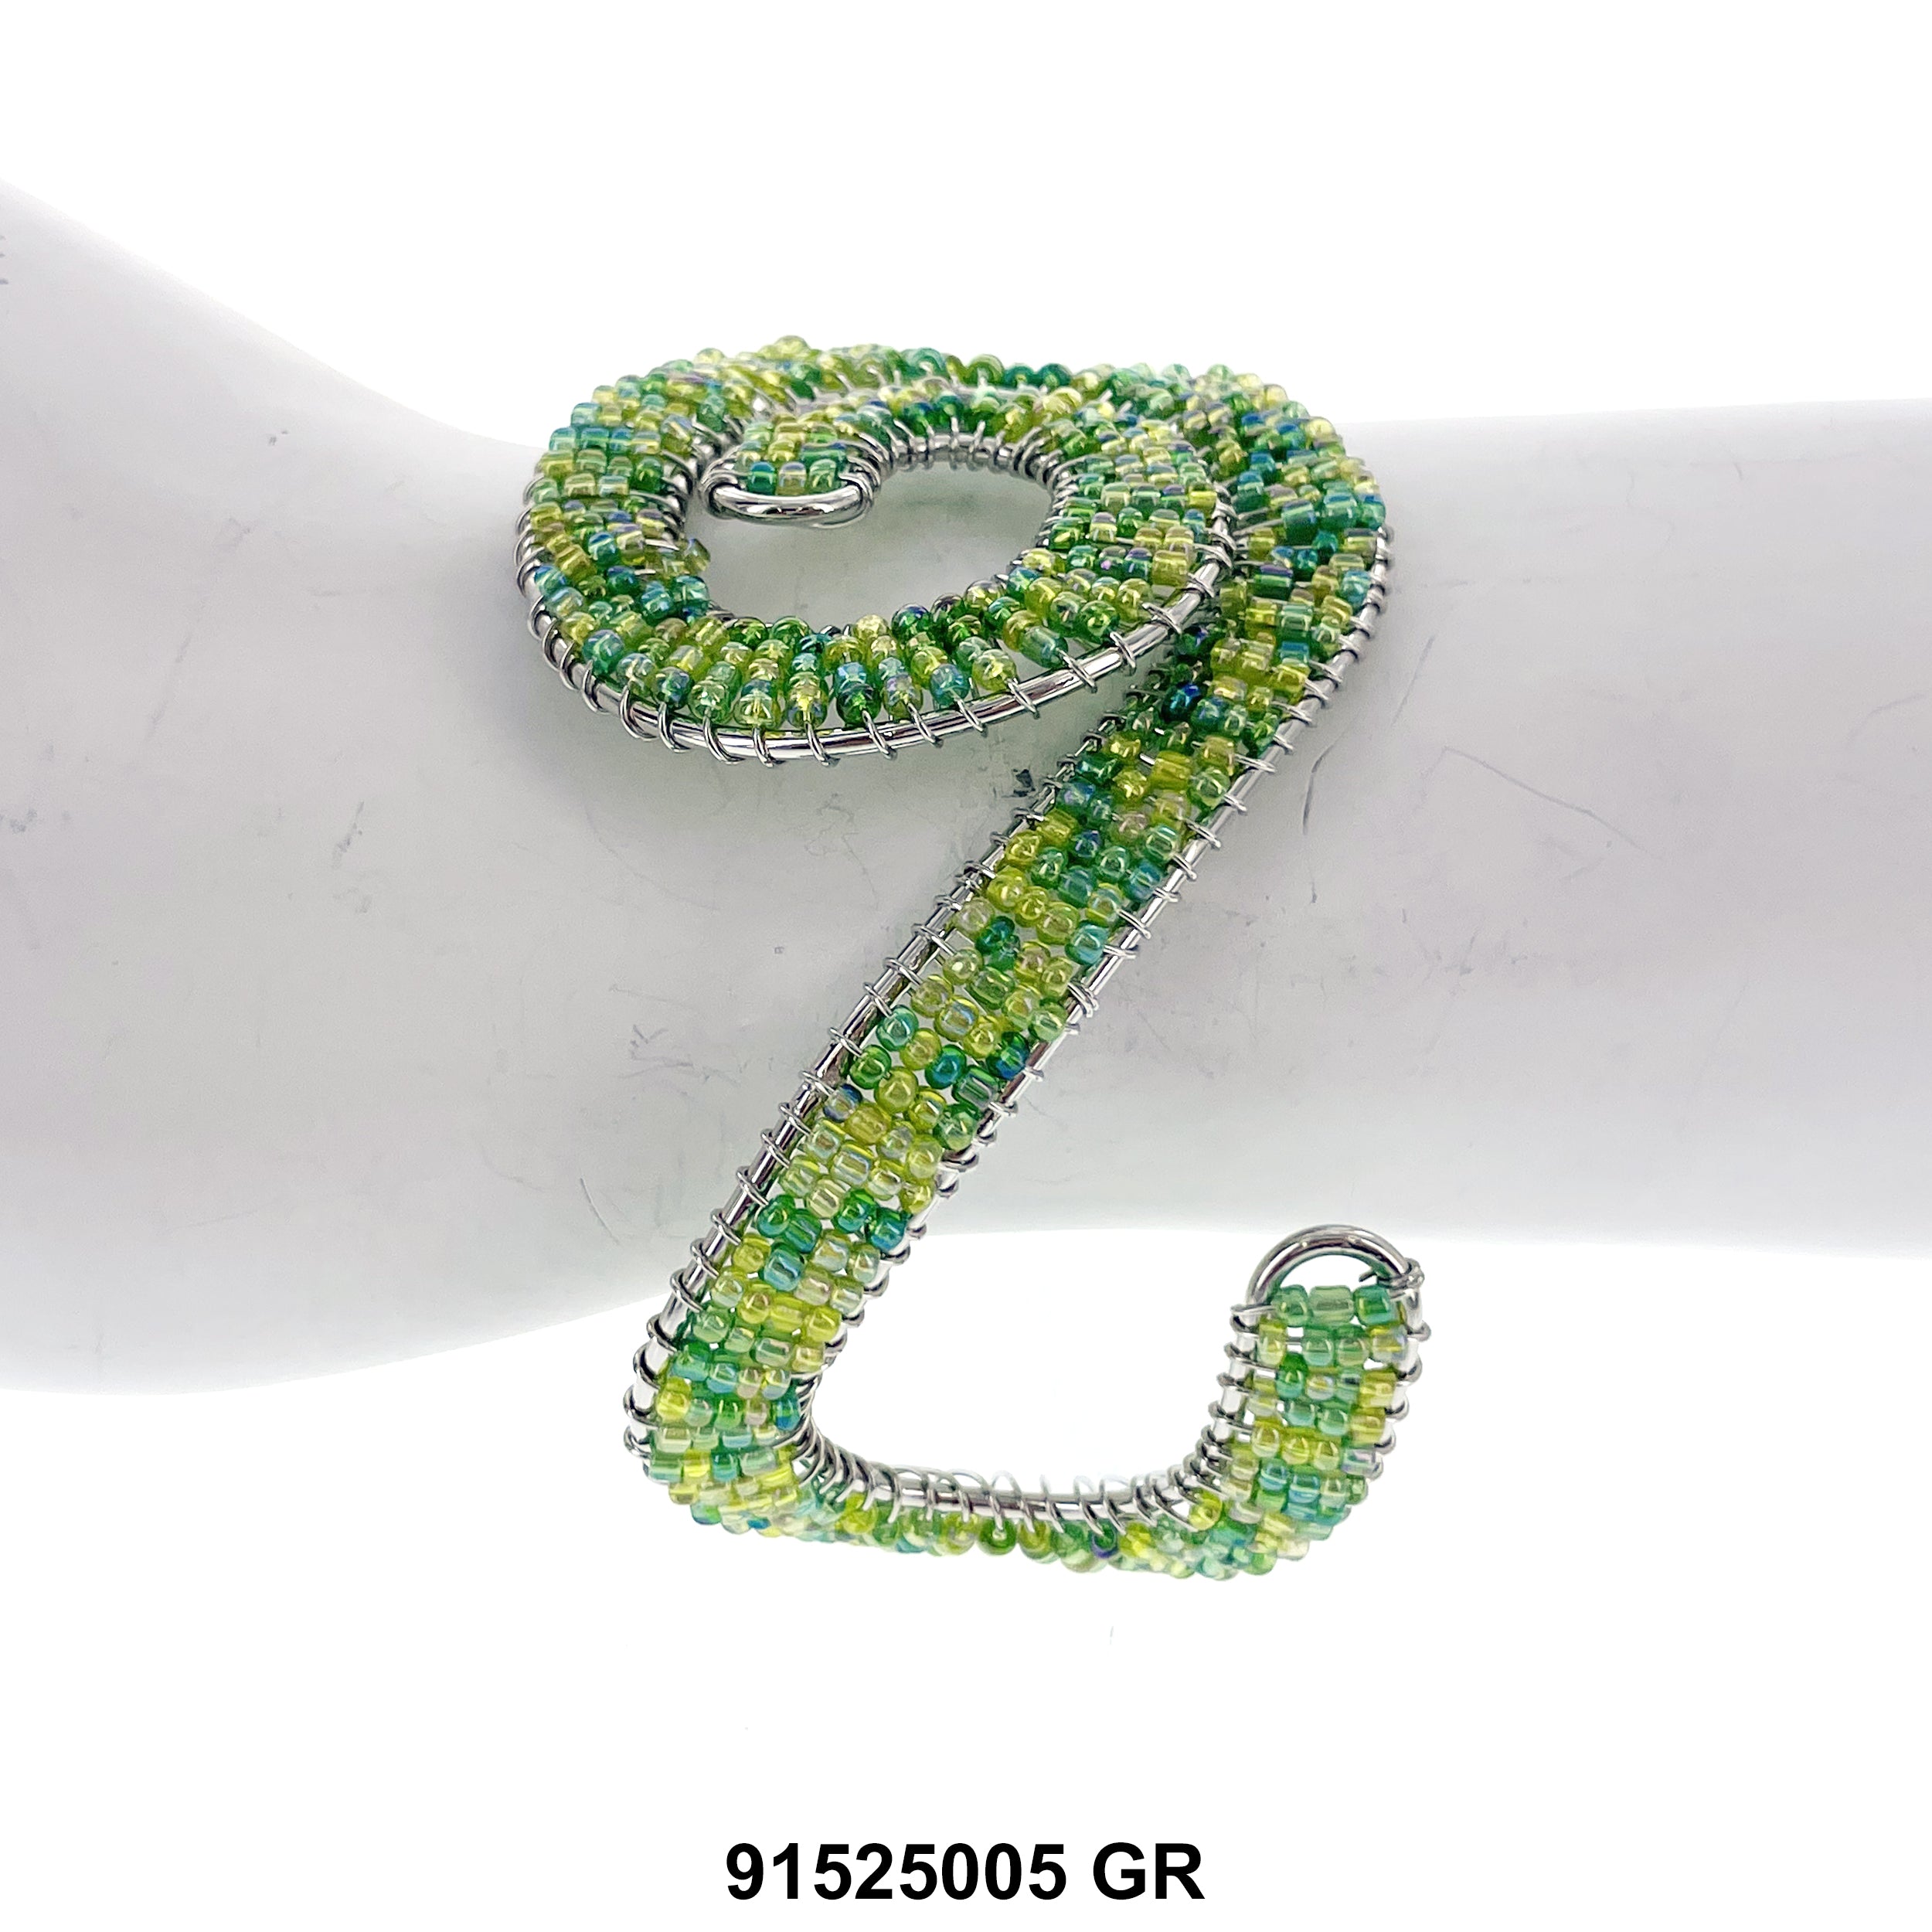 Cuff Bangle Bracelet 91525005 GR